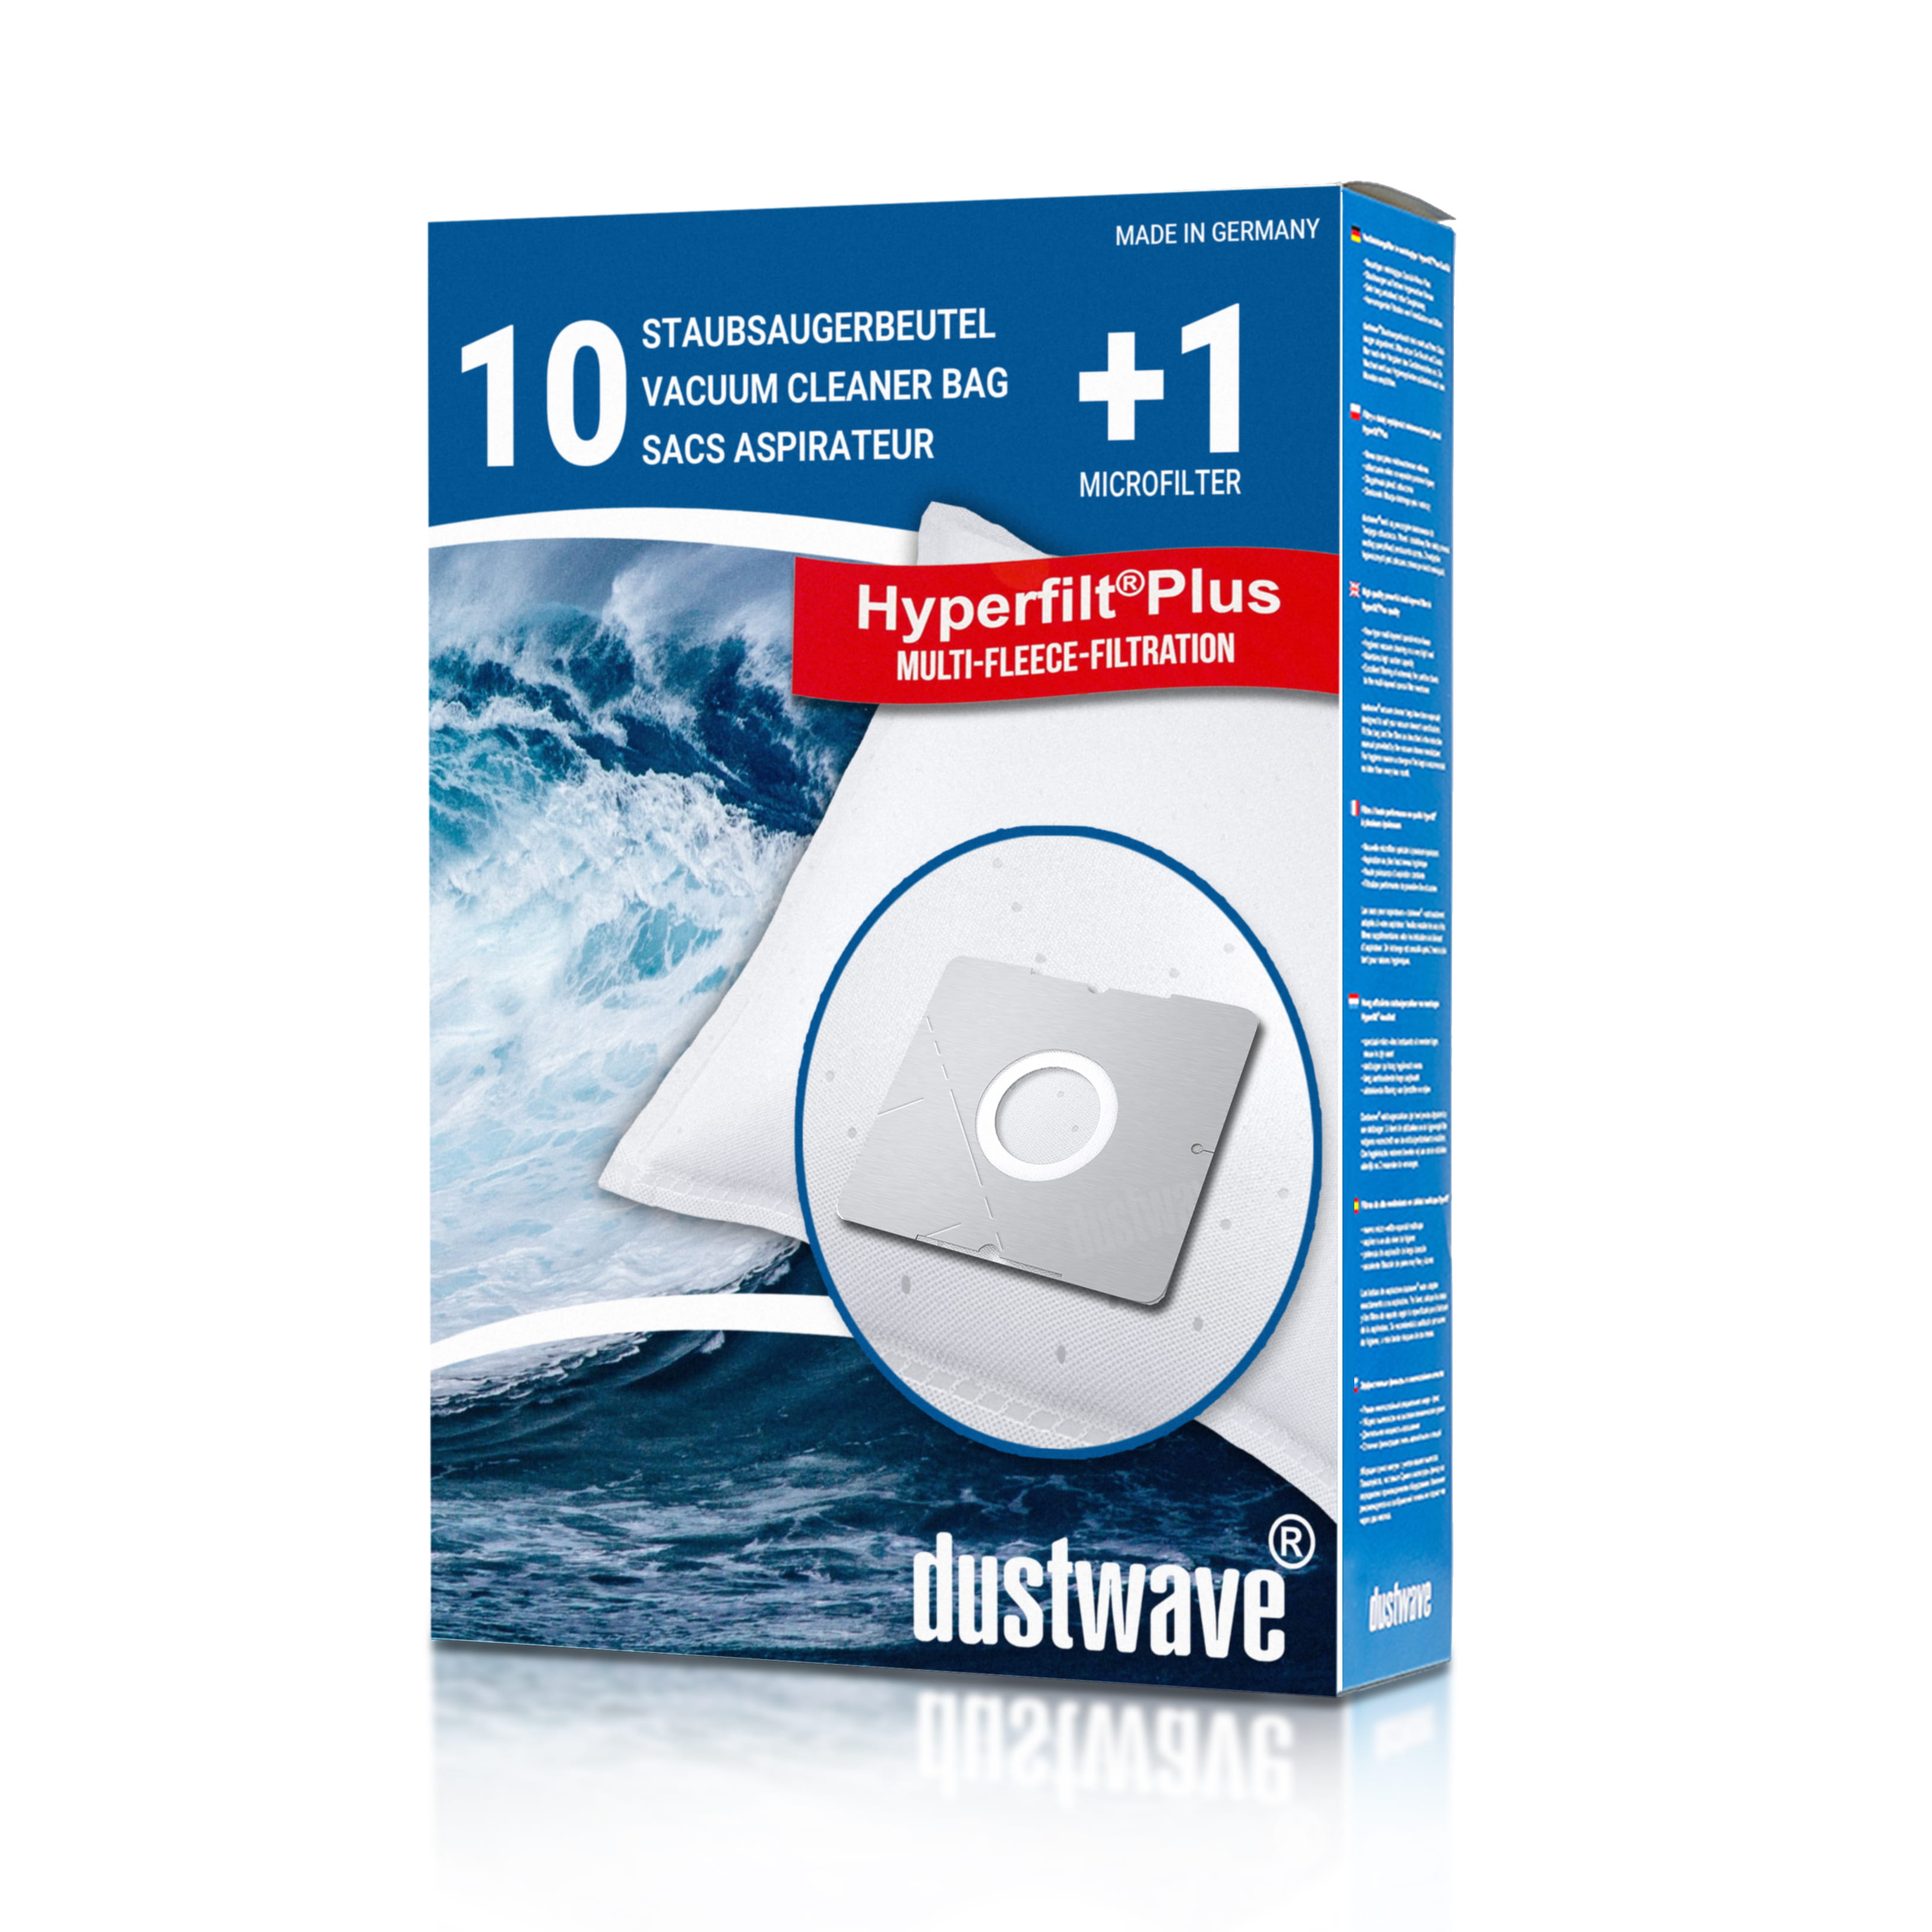 Dustwave® 10 Staubsaugerbeutel für AquaPur DIV 1010 - hocheffizient, mehrlagiges Mikrovlies mit Hygieneverschluss - Made in Germany